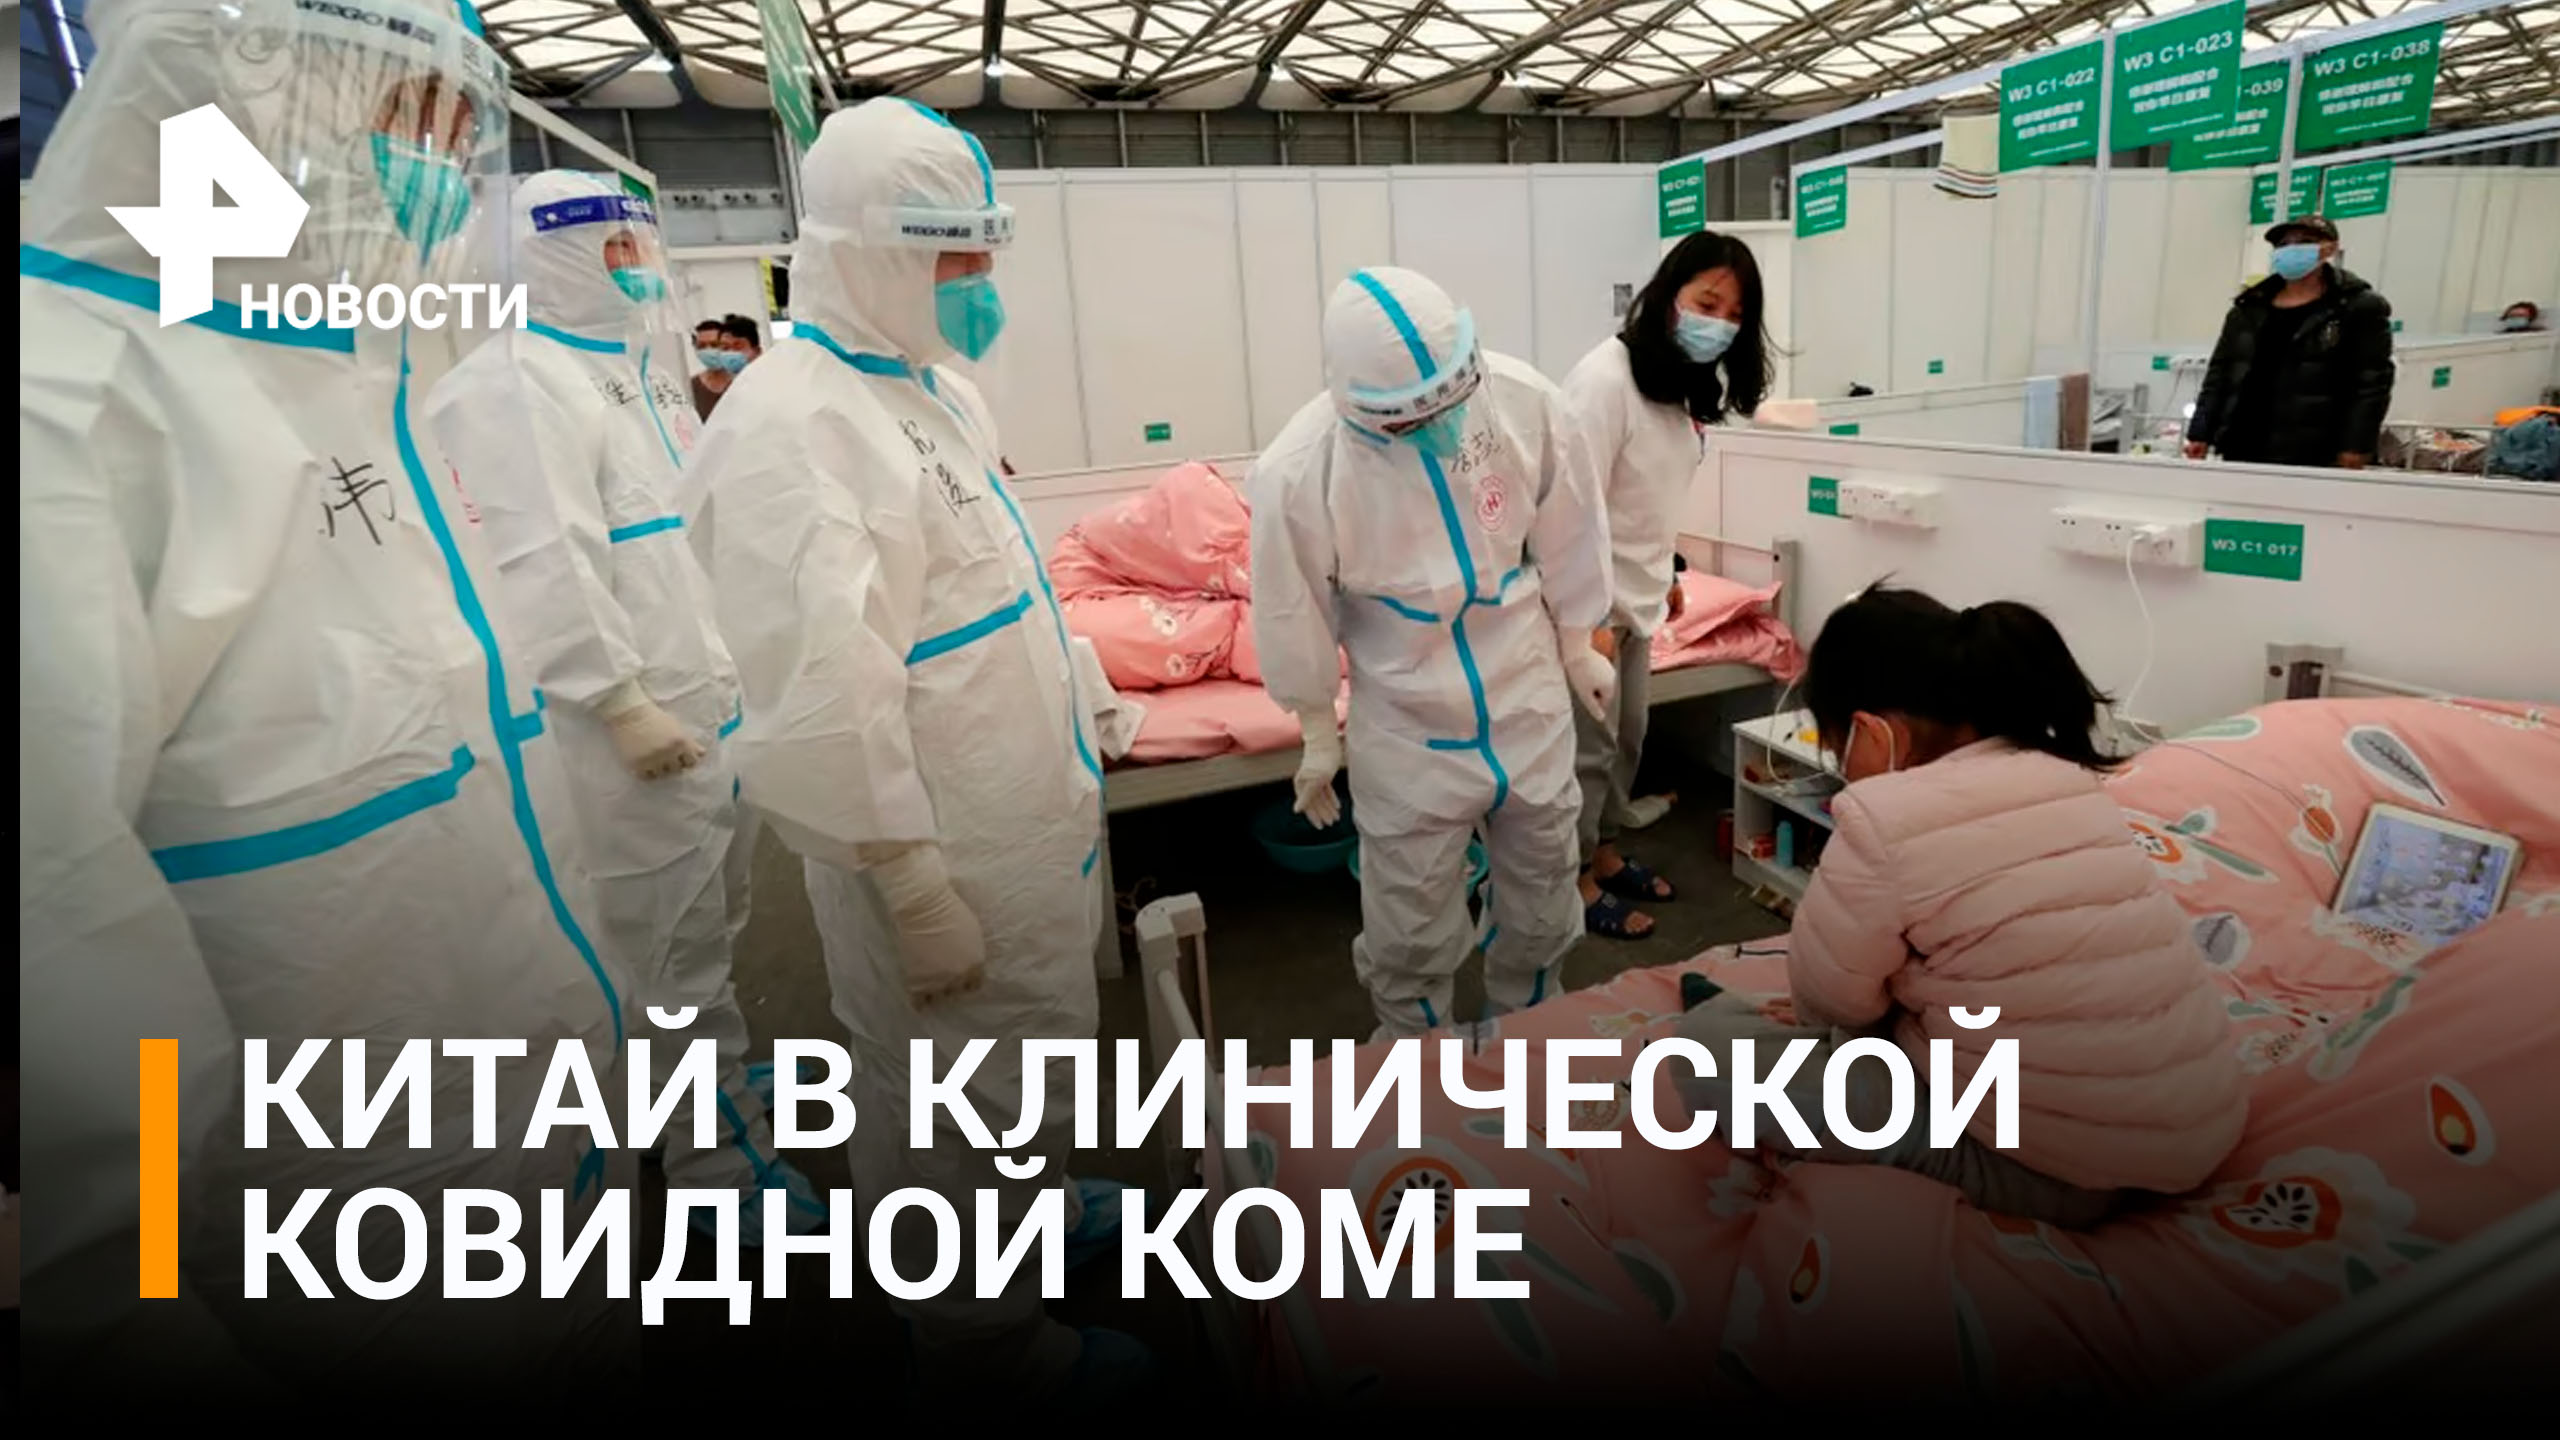 Вспышка коронавируса в Китае приобрела апокалиптический масштаб / РЕН Новости